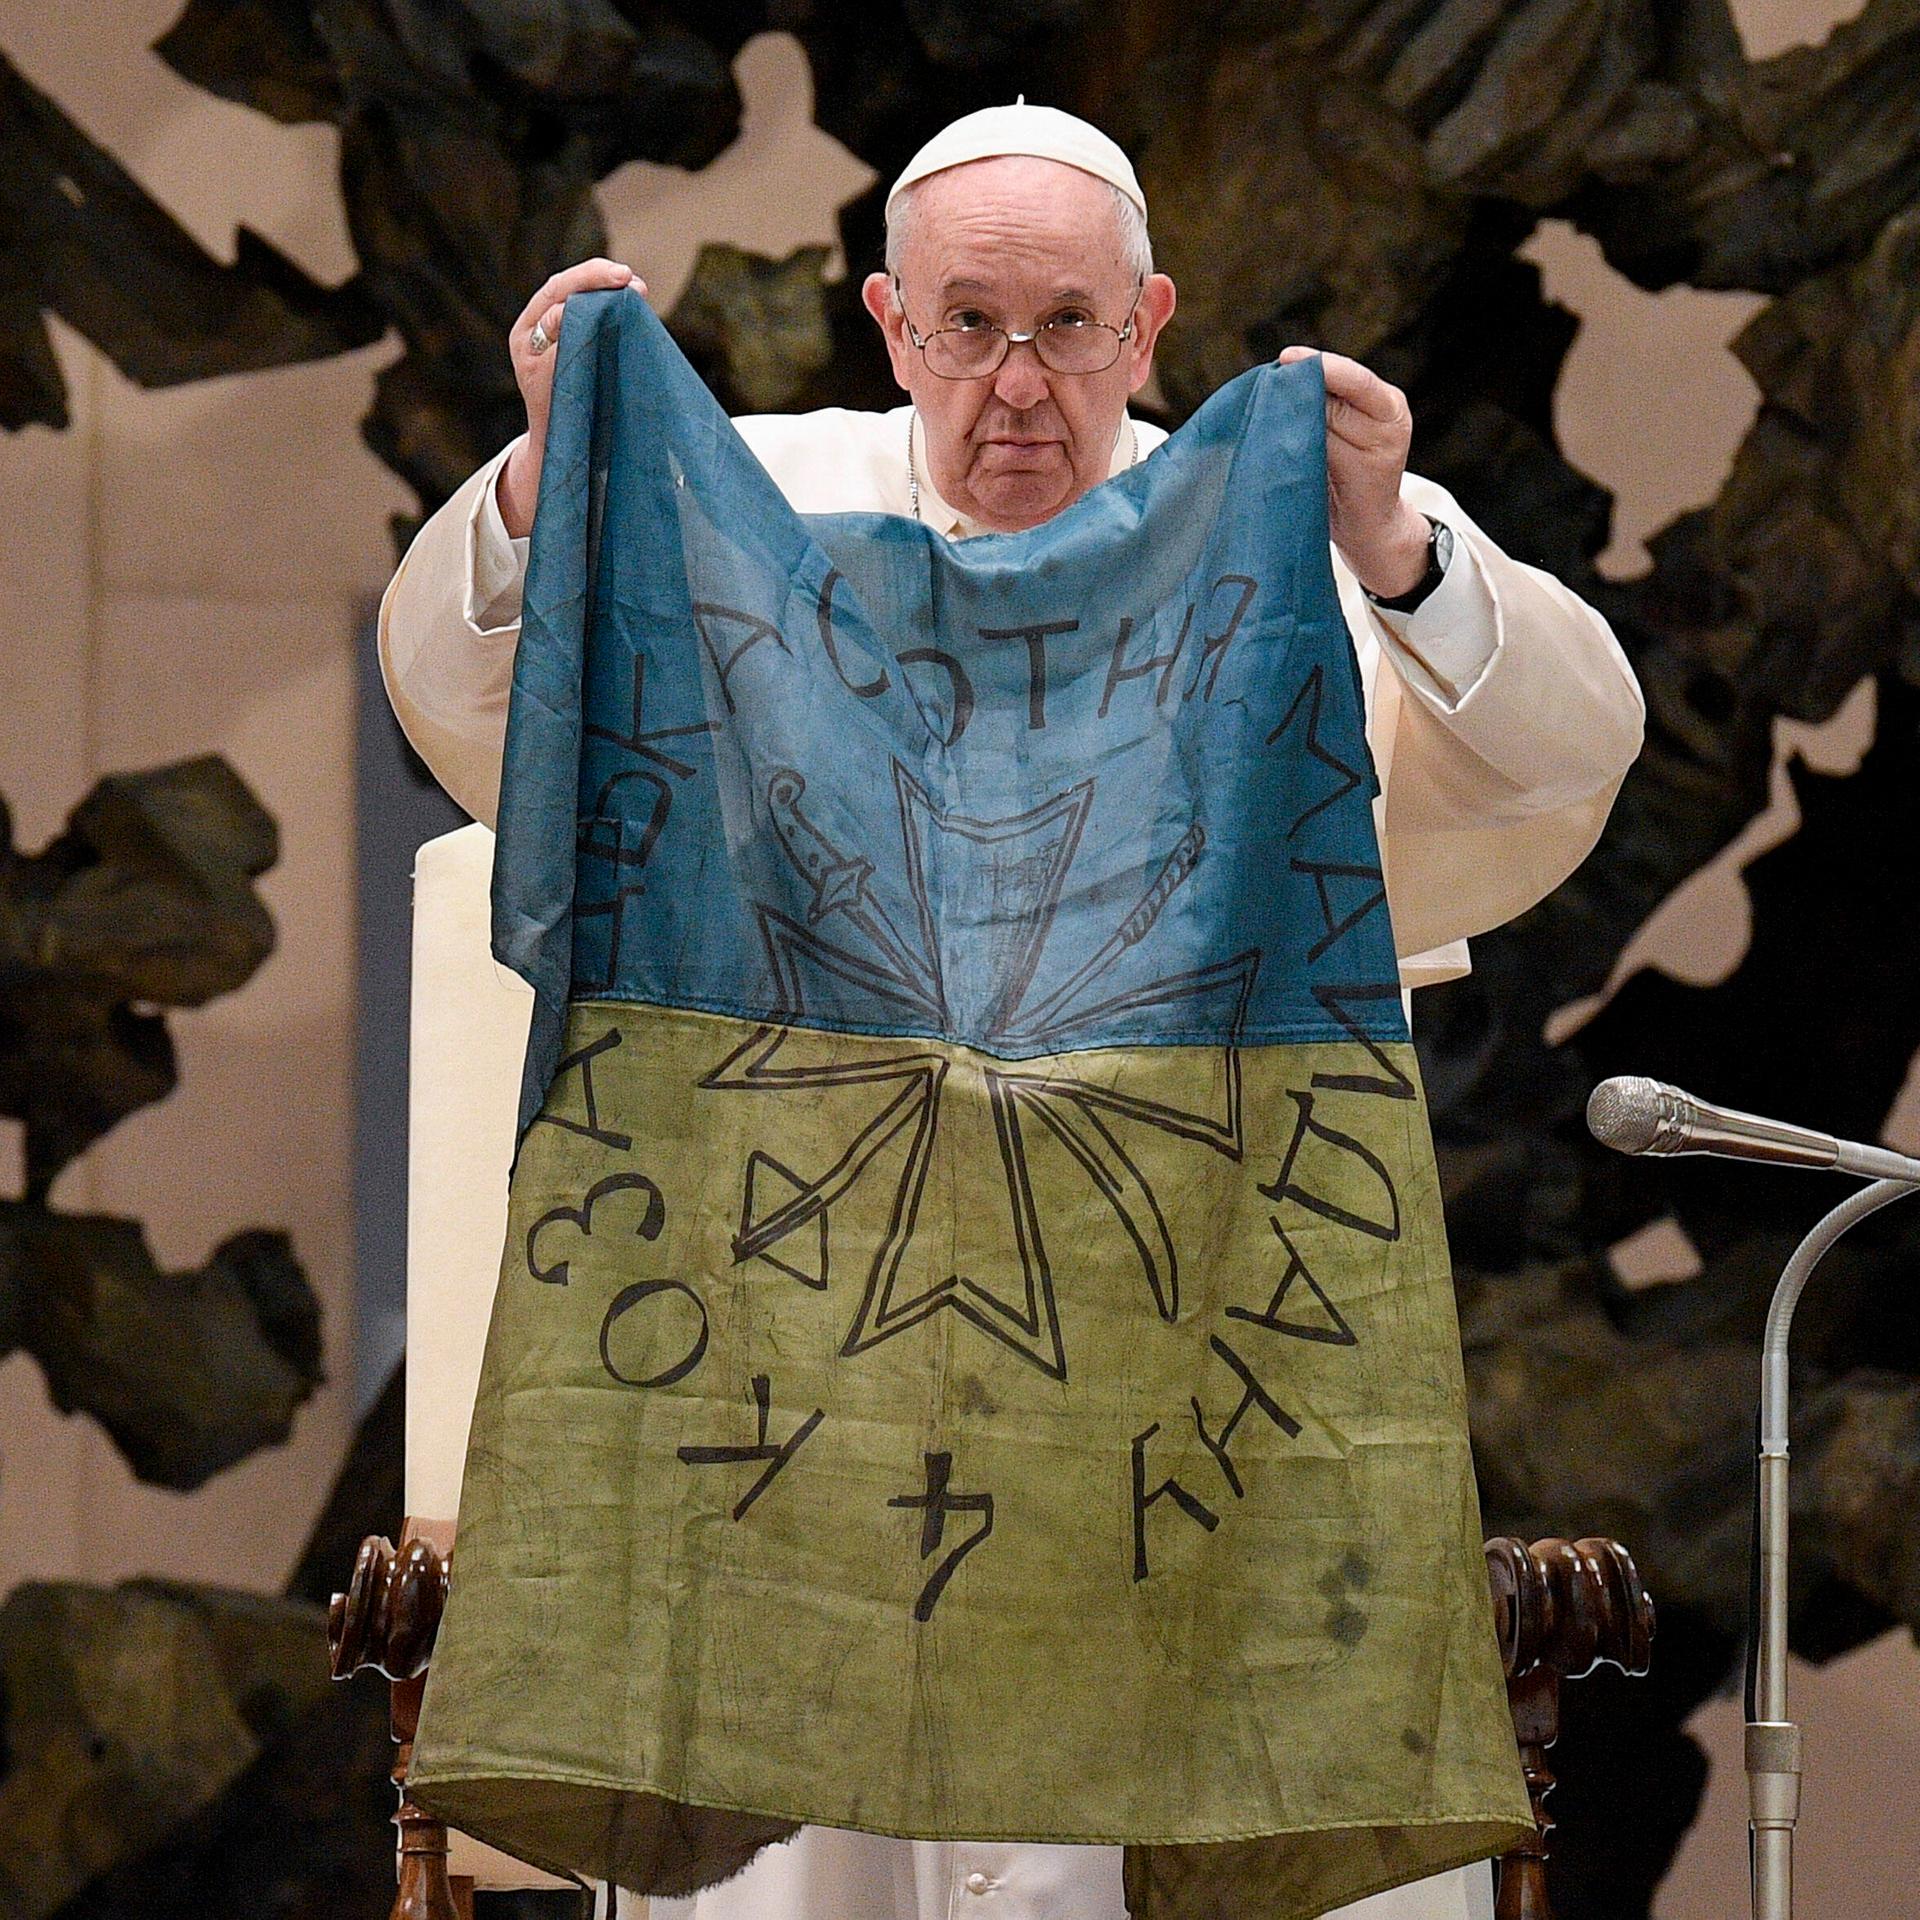 Papst Franziskus hält während seiner wöchentlichen Generalaudienz eine ukrainische Flagge hoch, die er nach seinen Aussagen aus der ukrainischen Stadt Butscha stammt. (imago 0154767020h)